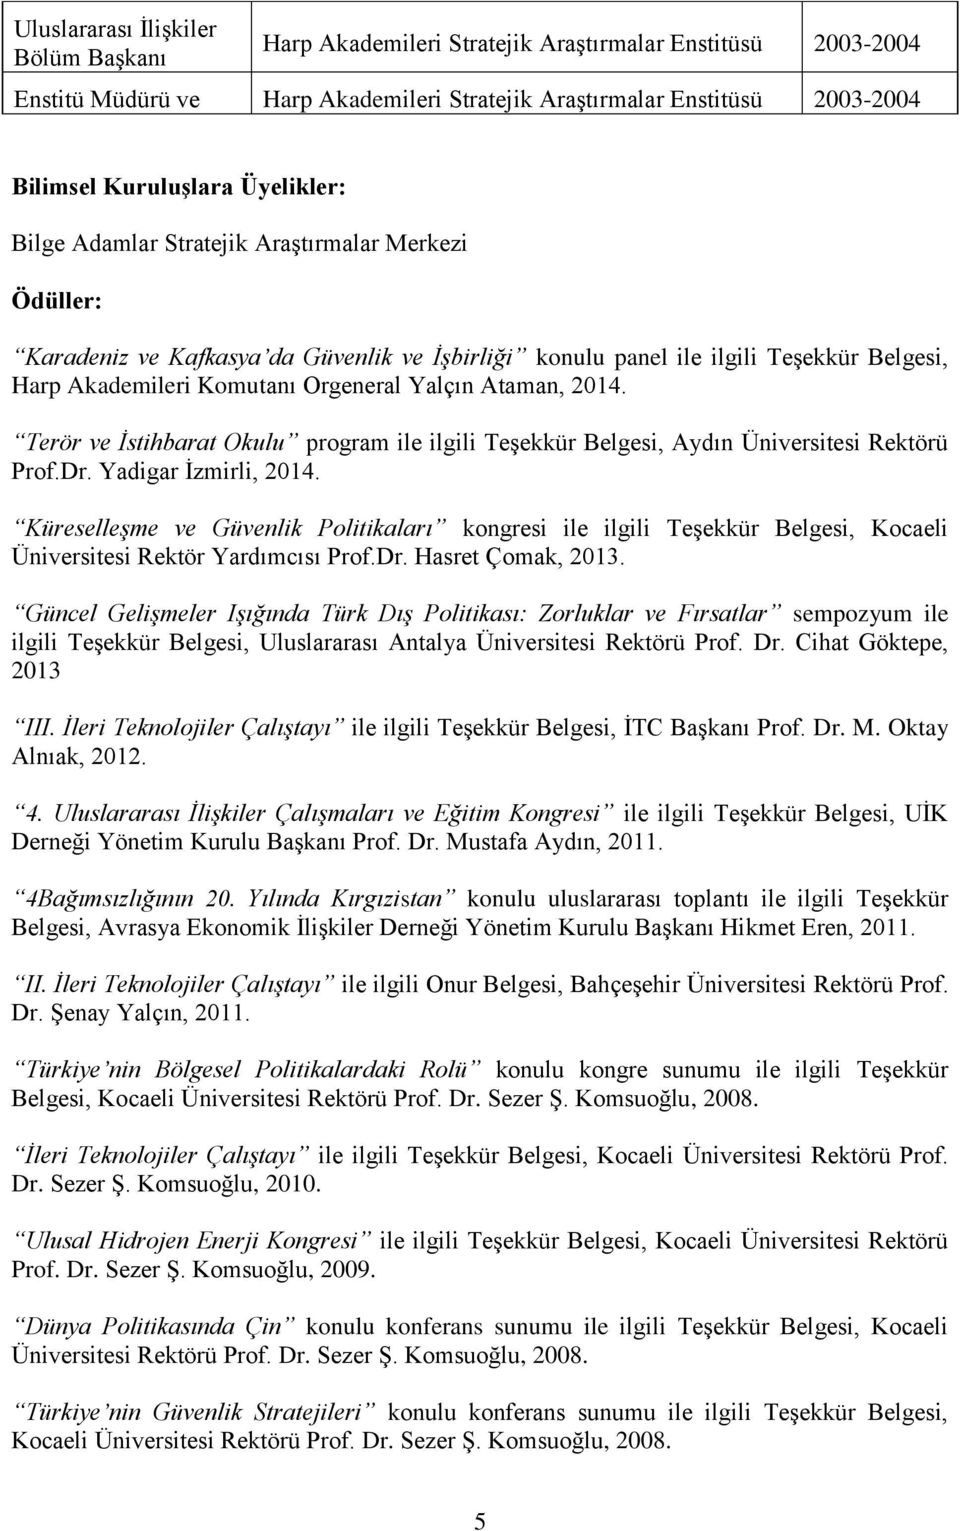 Ataman, 2014. Terör ve İstihbarat Okulu program ile ilgili Teşekkür Belgesi, Aydın Üniversitesi Rektörü Prof.Dr. Yadigar İzmirli, 2014.